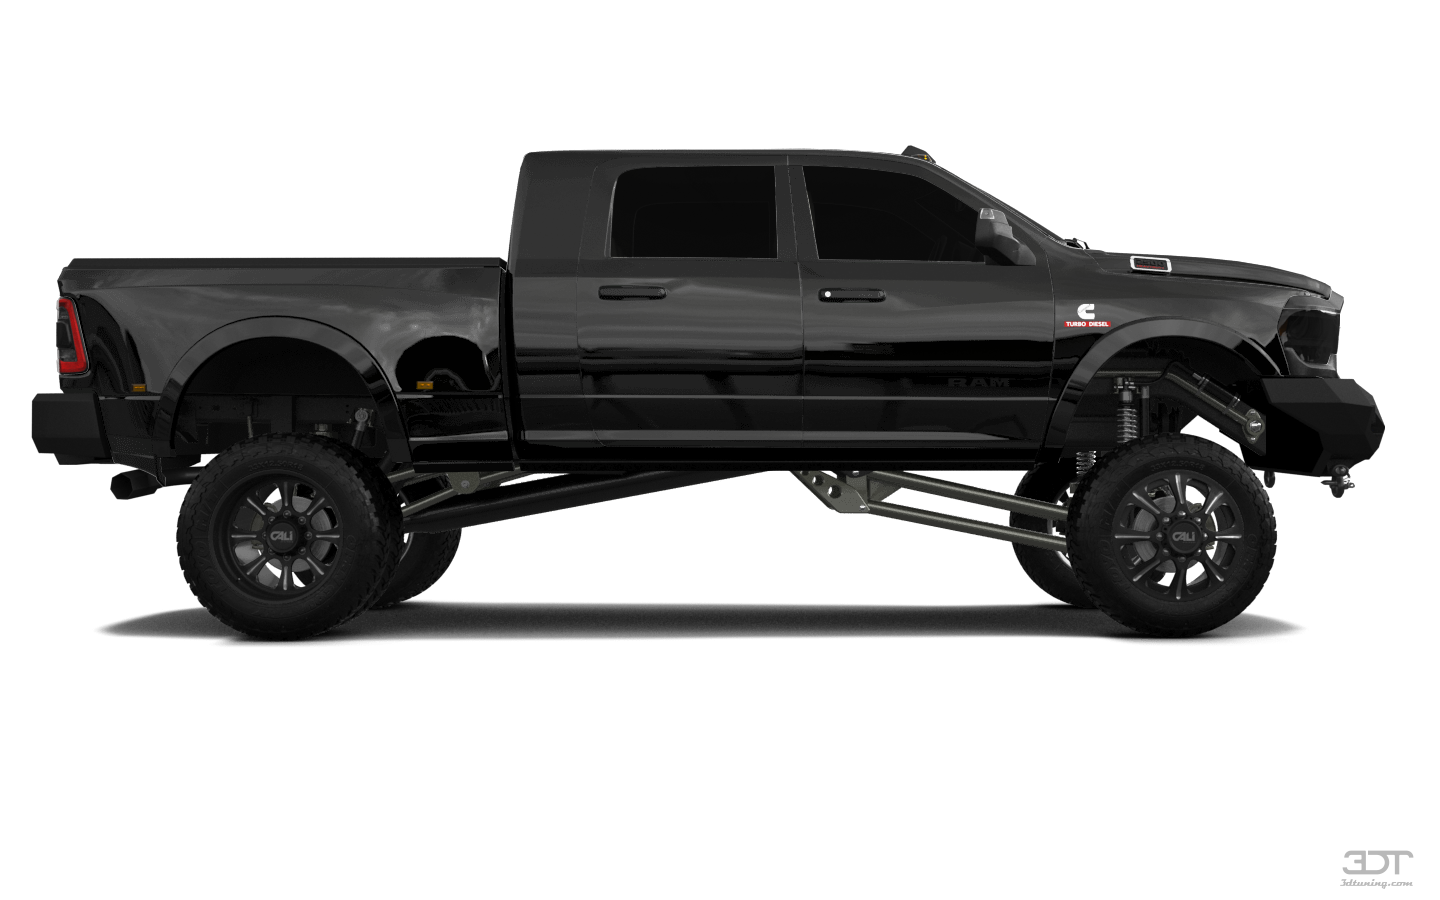 Dodge Ram 3500 4 Door pickup truck 2020 tuning